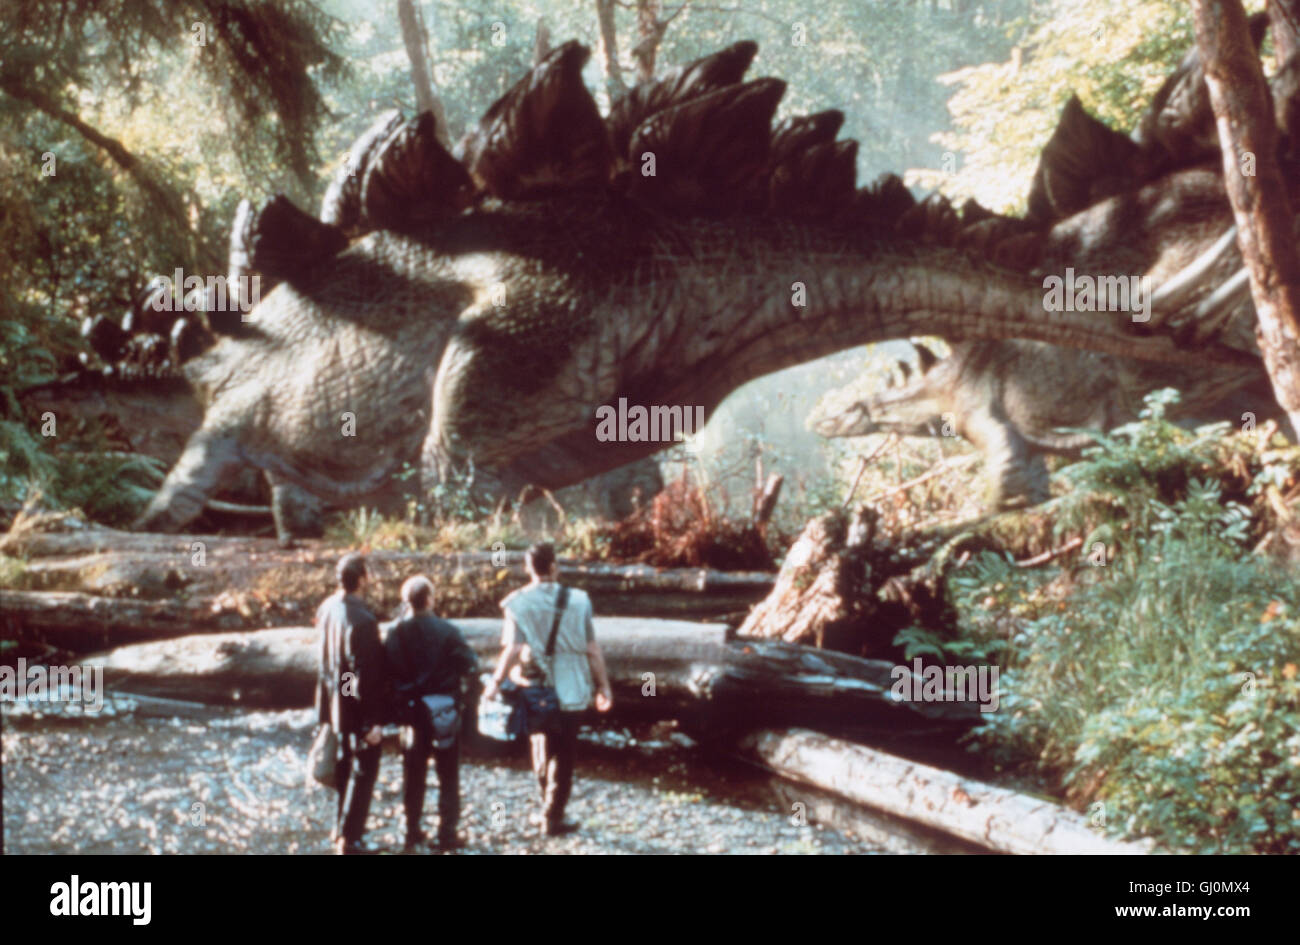 VERGESSENE WELT: JURASSIC PARK- Ian Malcolm (JEFF GOLDBLUM), Eddie Carr (RICHARD SCHIFF) und Nick Van Owen (VINCE VAUGH) kommen einer Herde Stegosaurier gefährlich nahe Regie: Steven Spielberg aka. The Lost World: Jurassic Park Stock Photo